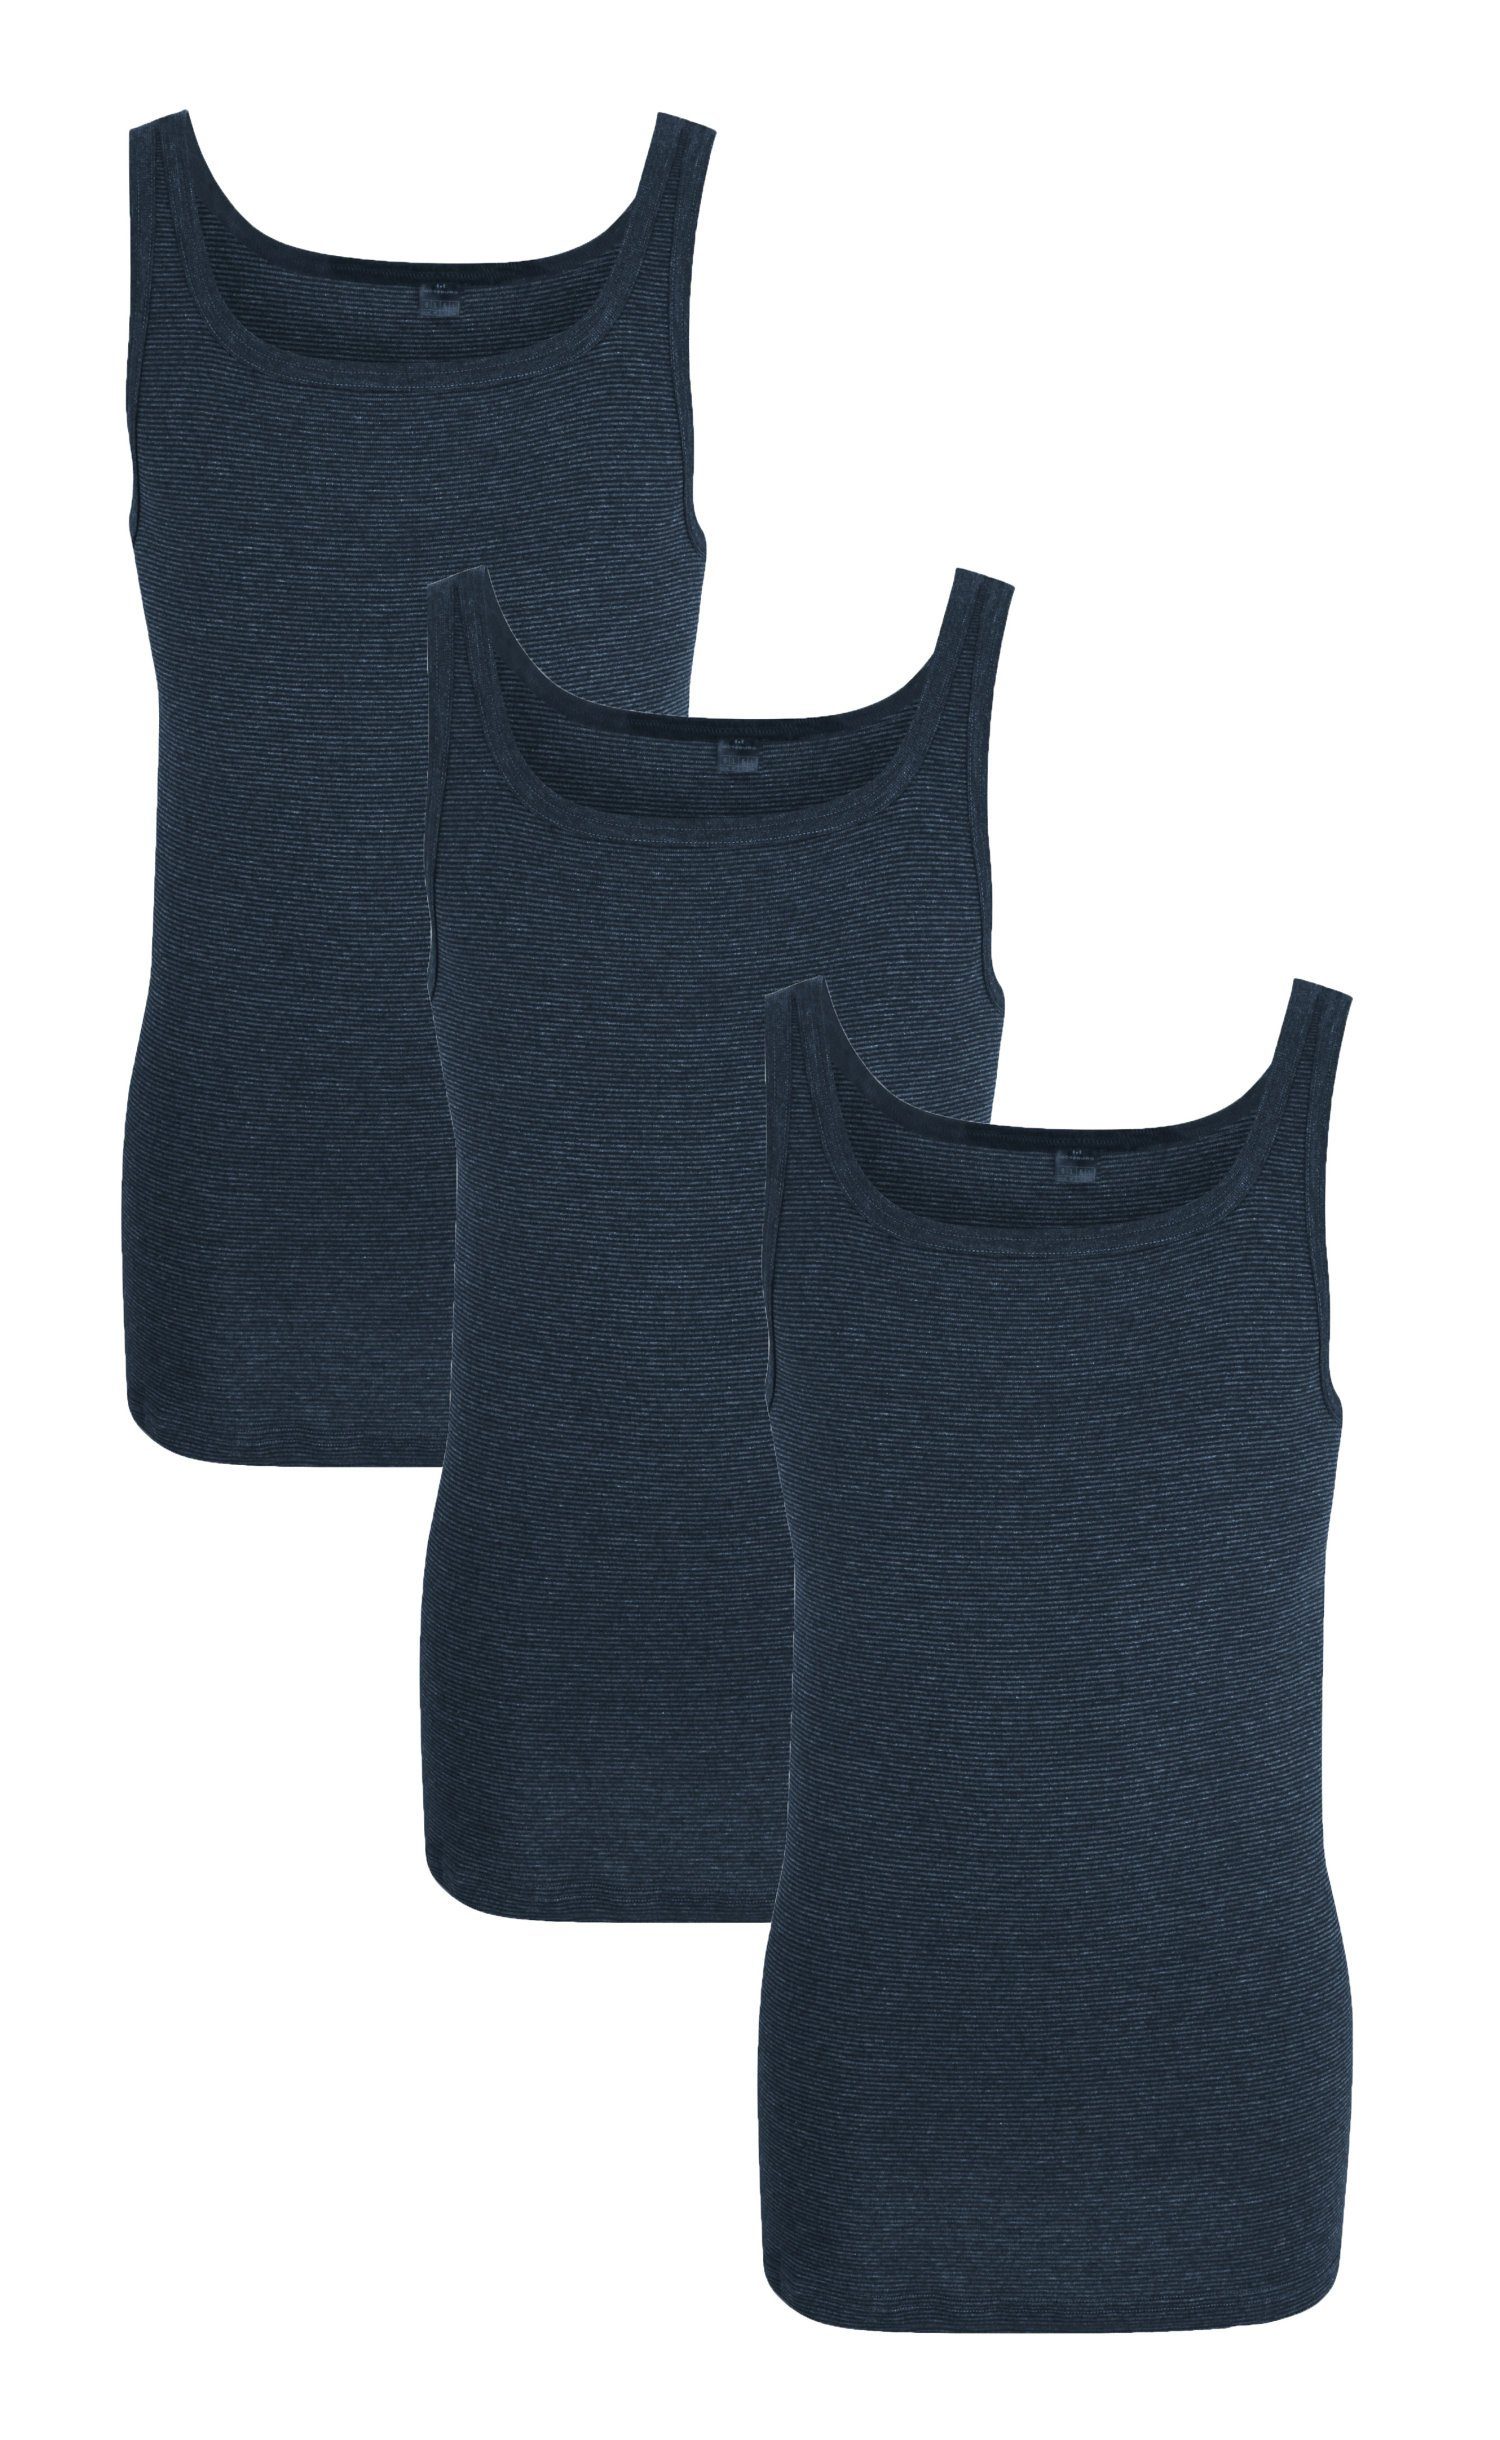 GÖTZBURG Unterhemd 3er Pack Herren Unterhemden (3-St) Feinripp Qualität blau